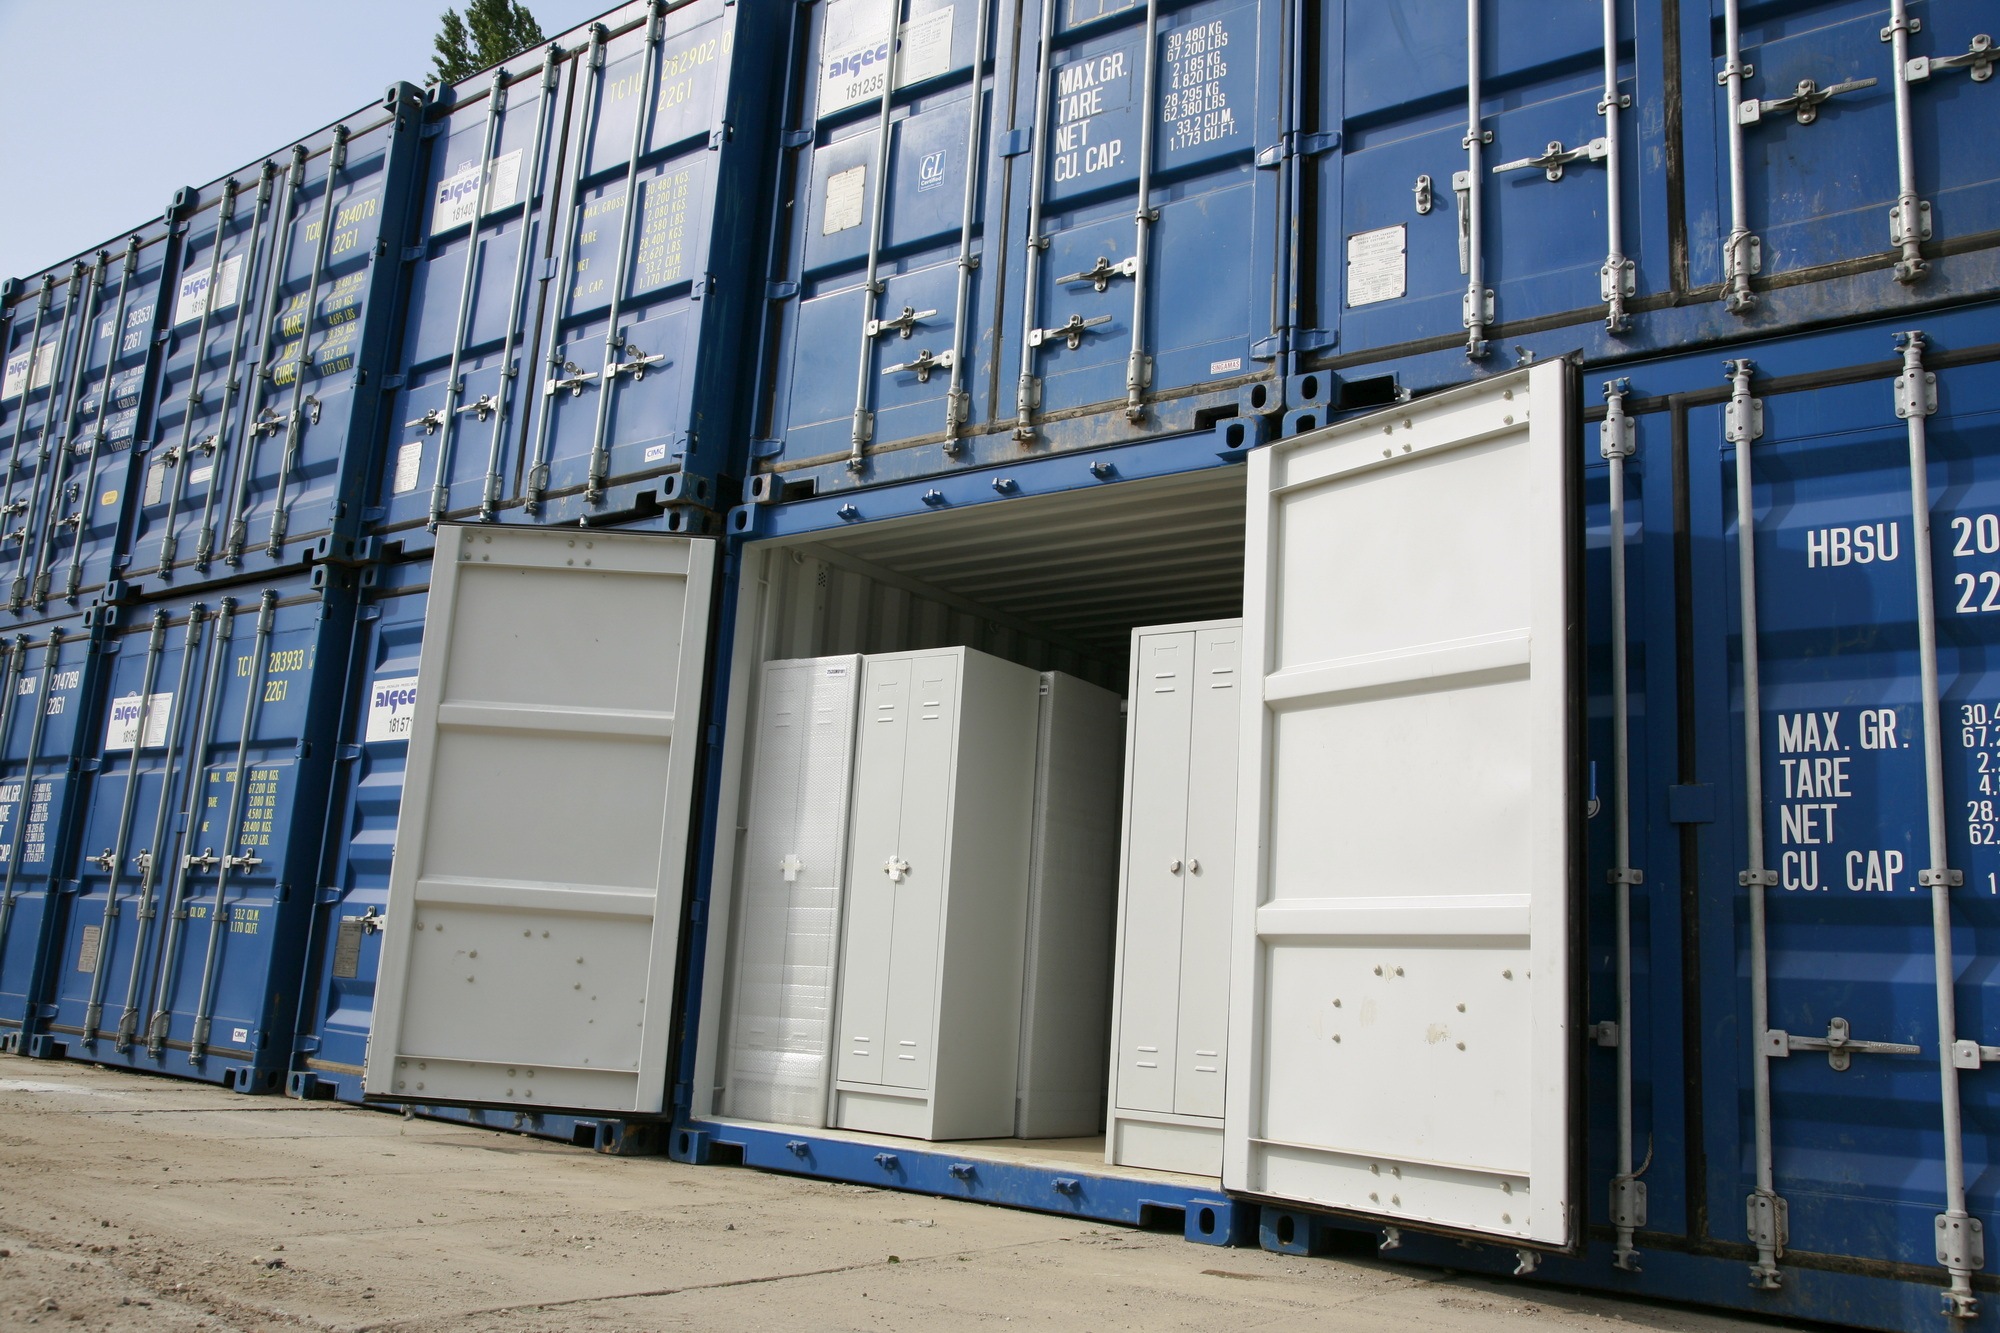 10 skladových kontejnerů modré barvy. Jeden kontejner má otevřené vrata.